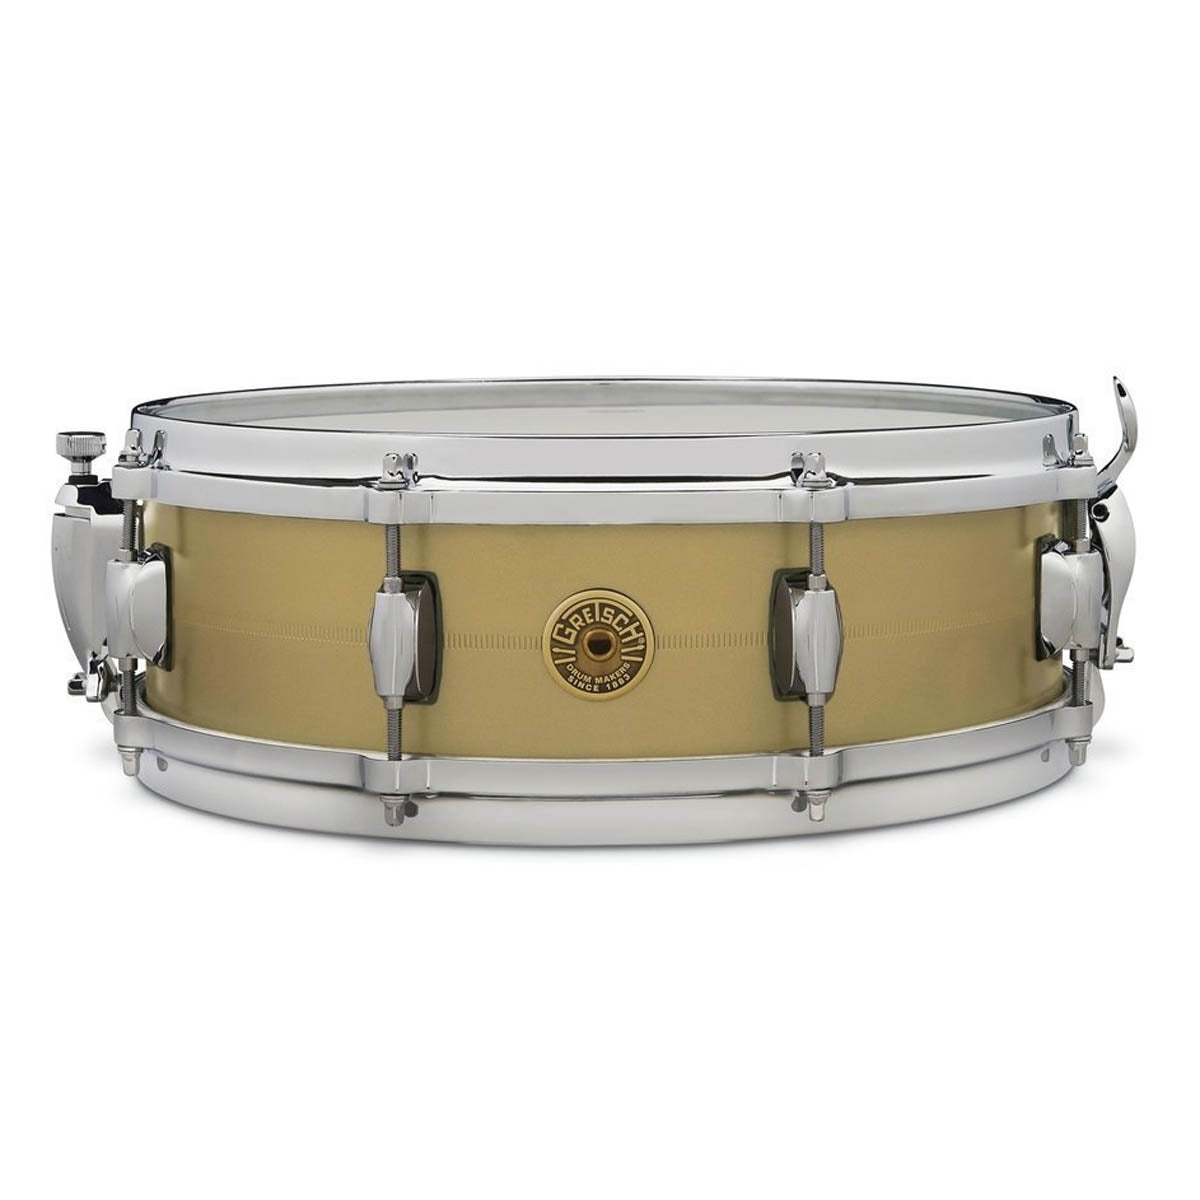 Gretsch USA Gergo Borlai Signature 14"x4.25" Snare Drum